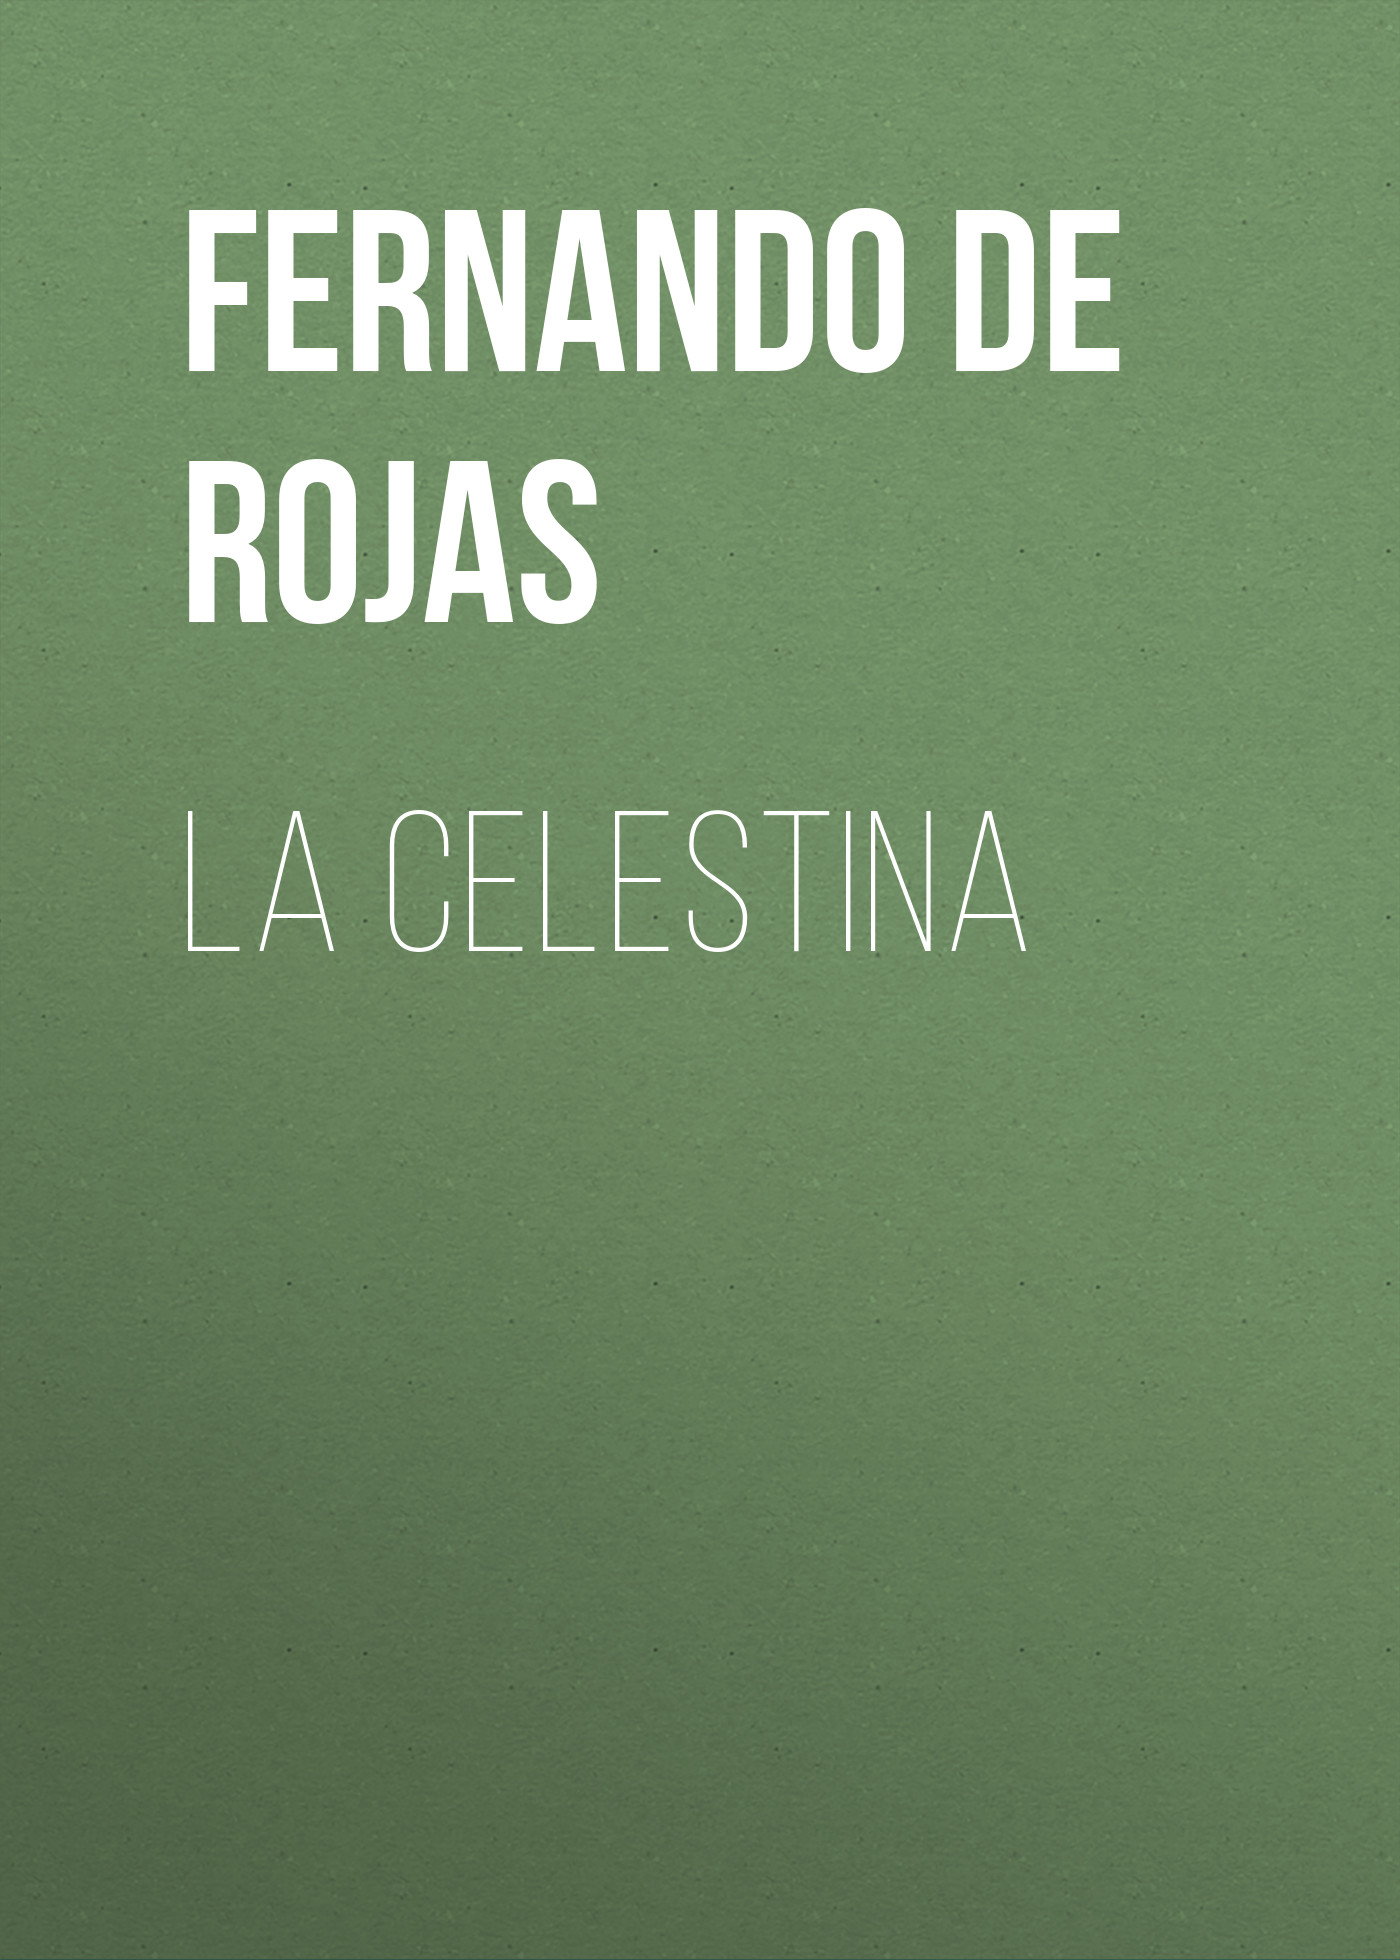 Книга La Celestina из серии , созданная Fernando de Rojas, может относится к жанру Зарубежная старинная литература, Зарубежная классика, Зарубежные любовные романы. Стоимость электронной книги La Celestina с идентификатором 36323620 составляет 0 руб.